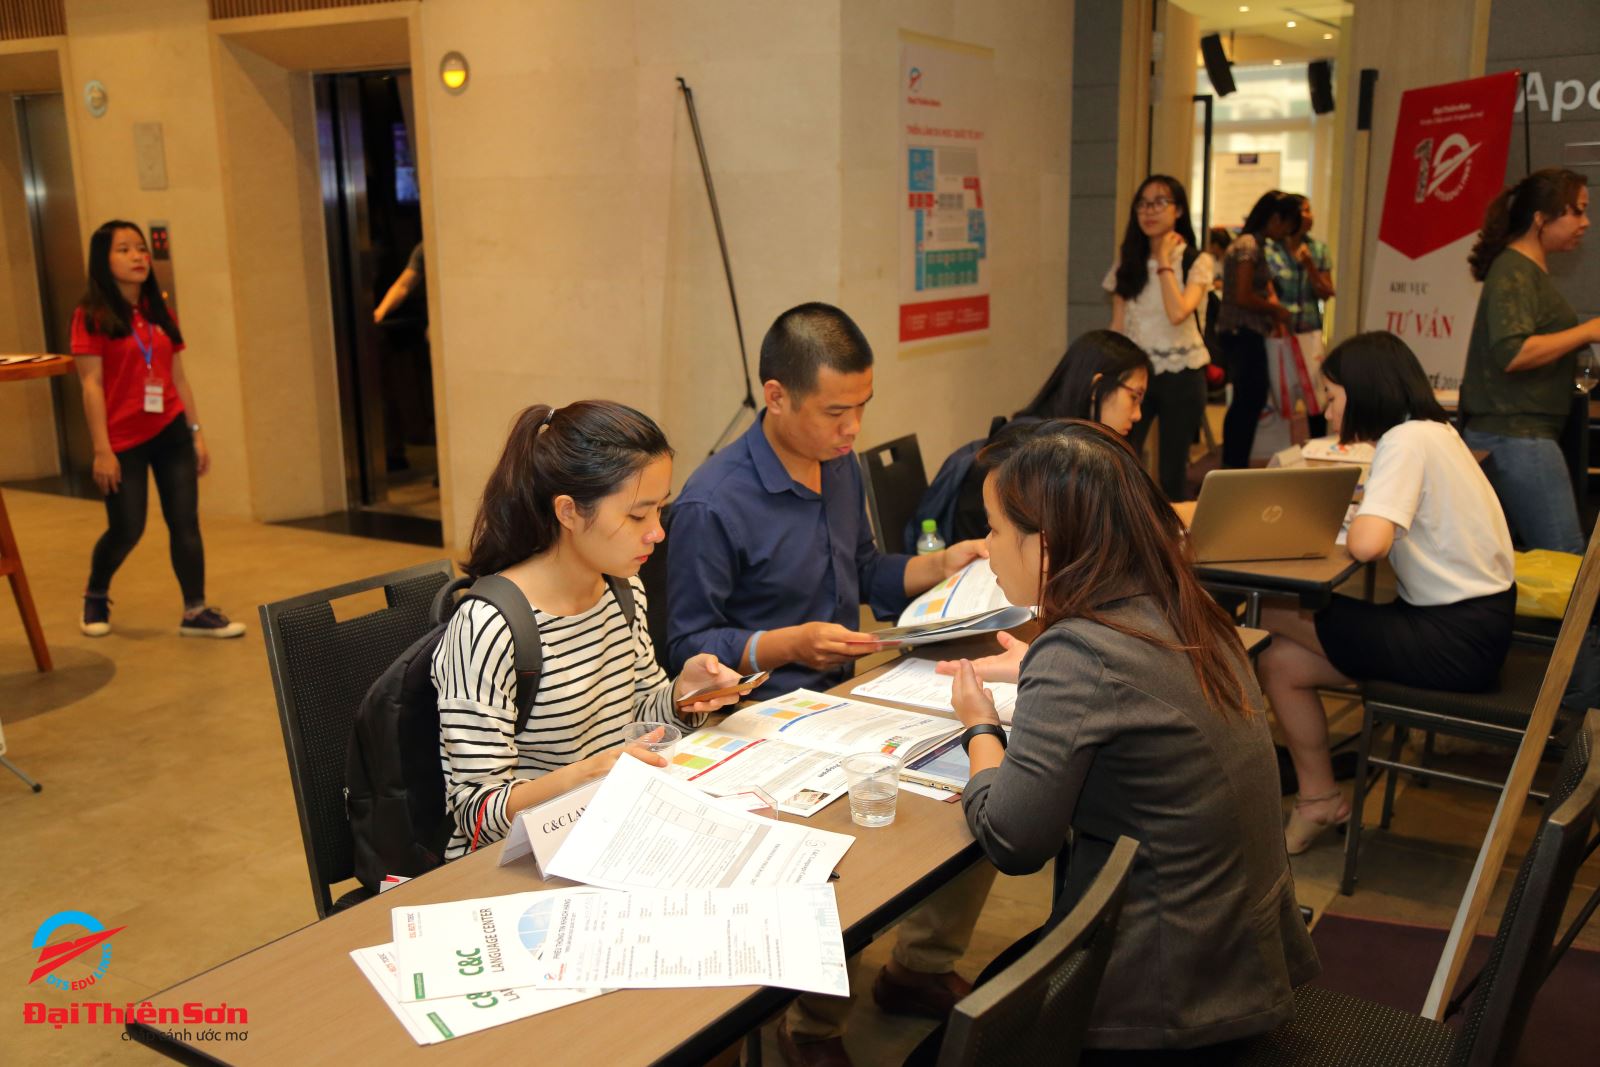  Các học sinh được tư vấn miễn phí tại buổi hội thảo - Du học Đại Thiên Sơn DTS